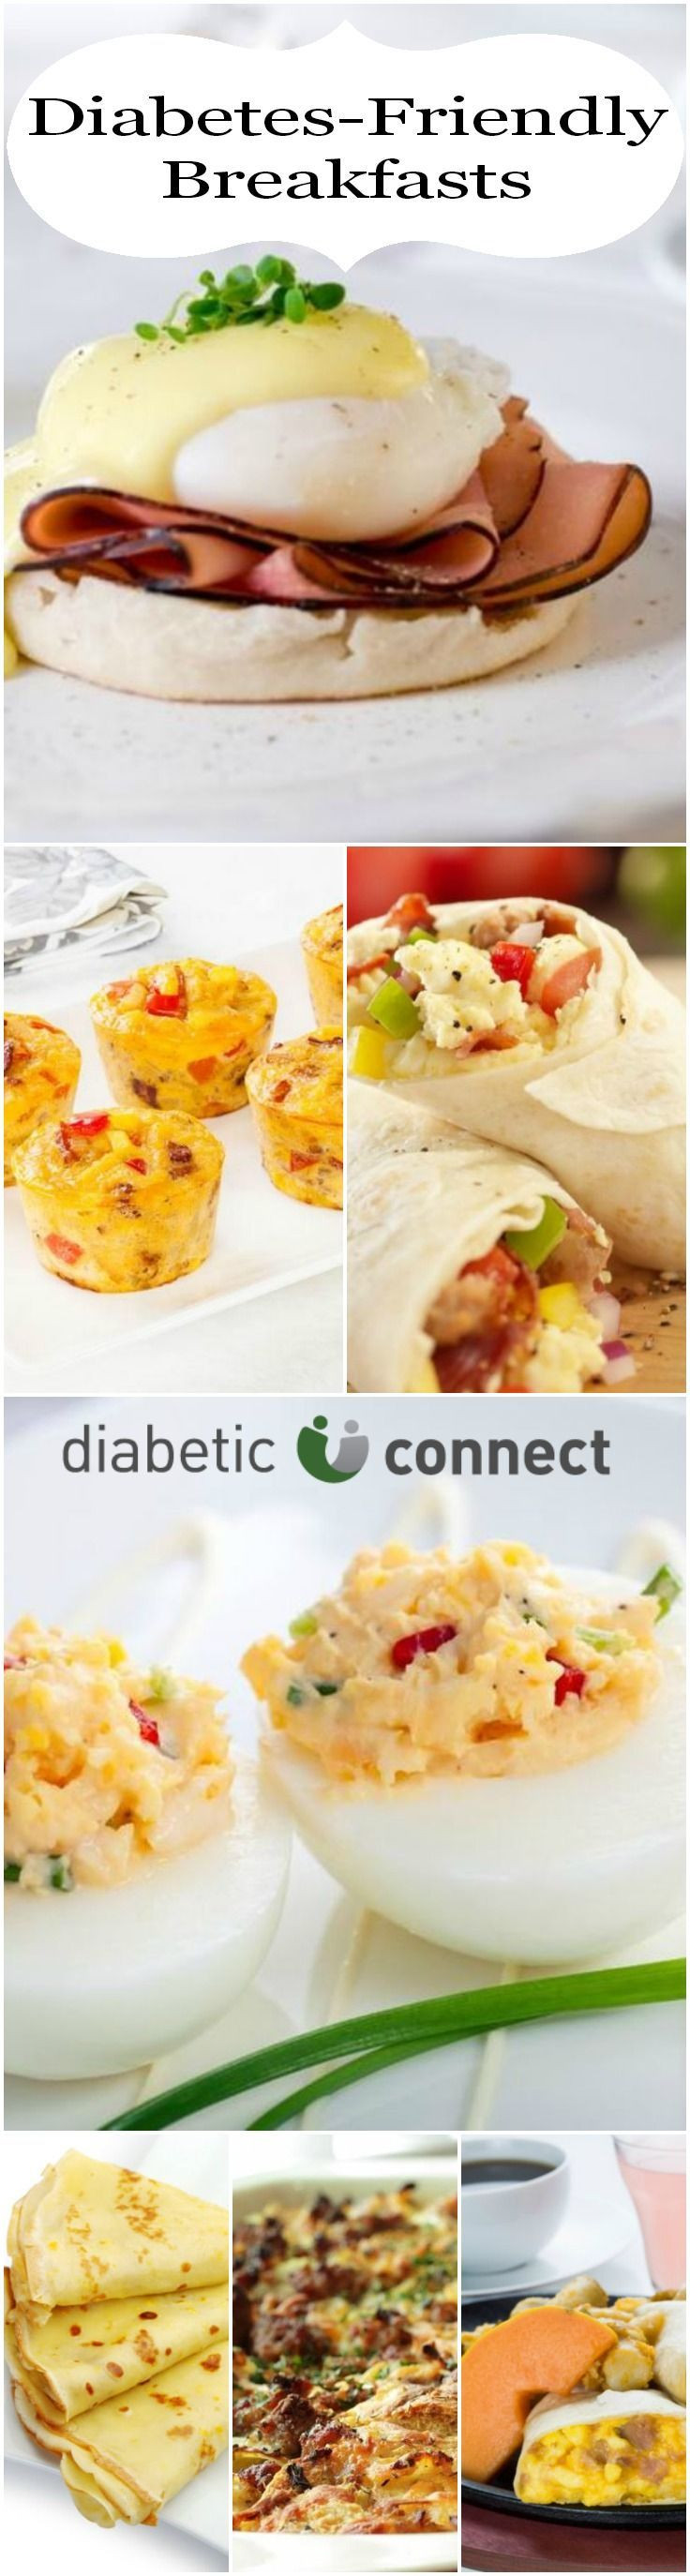 Diabetic Breakfast Recipe
 Diabetic breakfast ideas